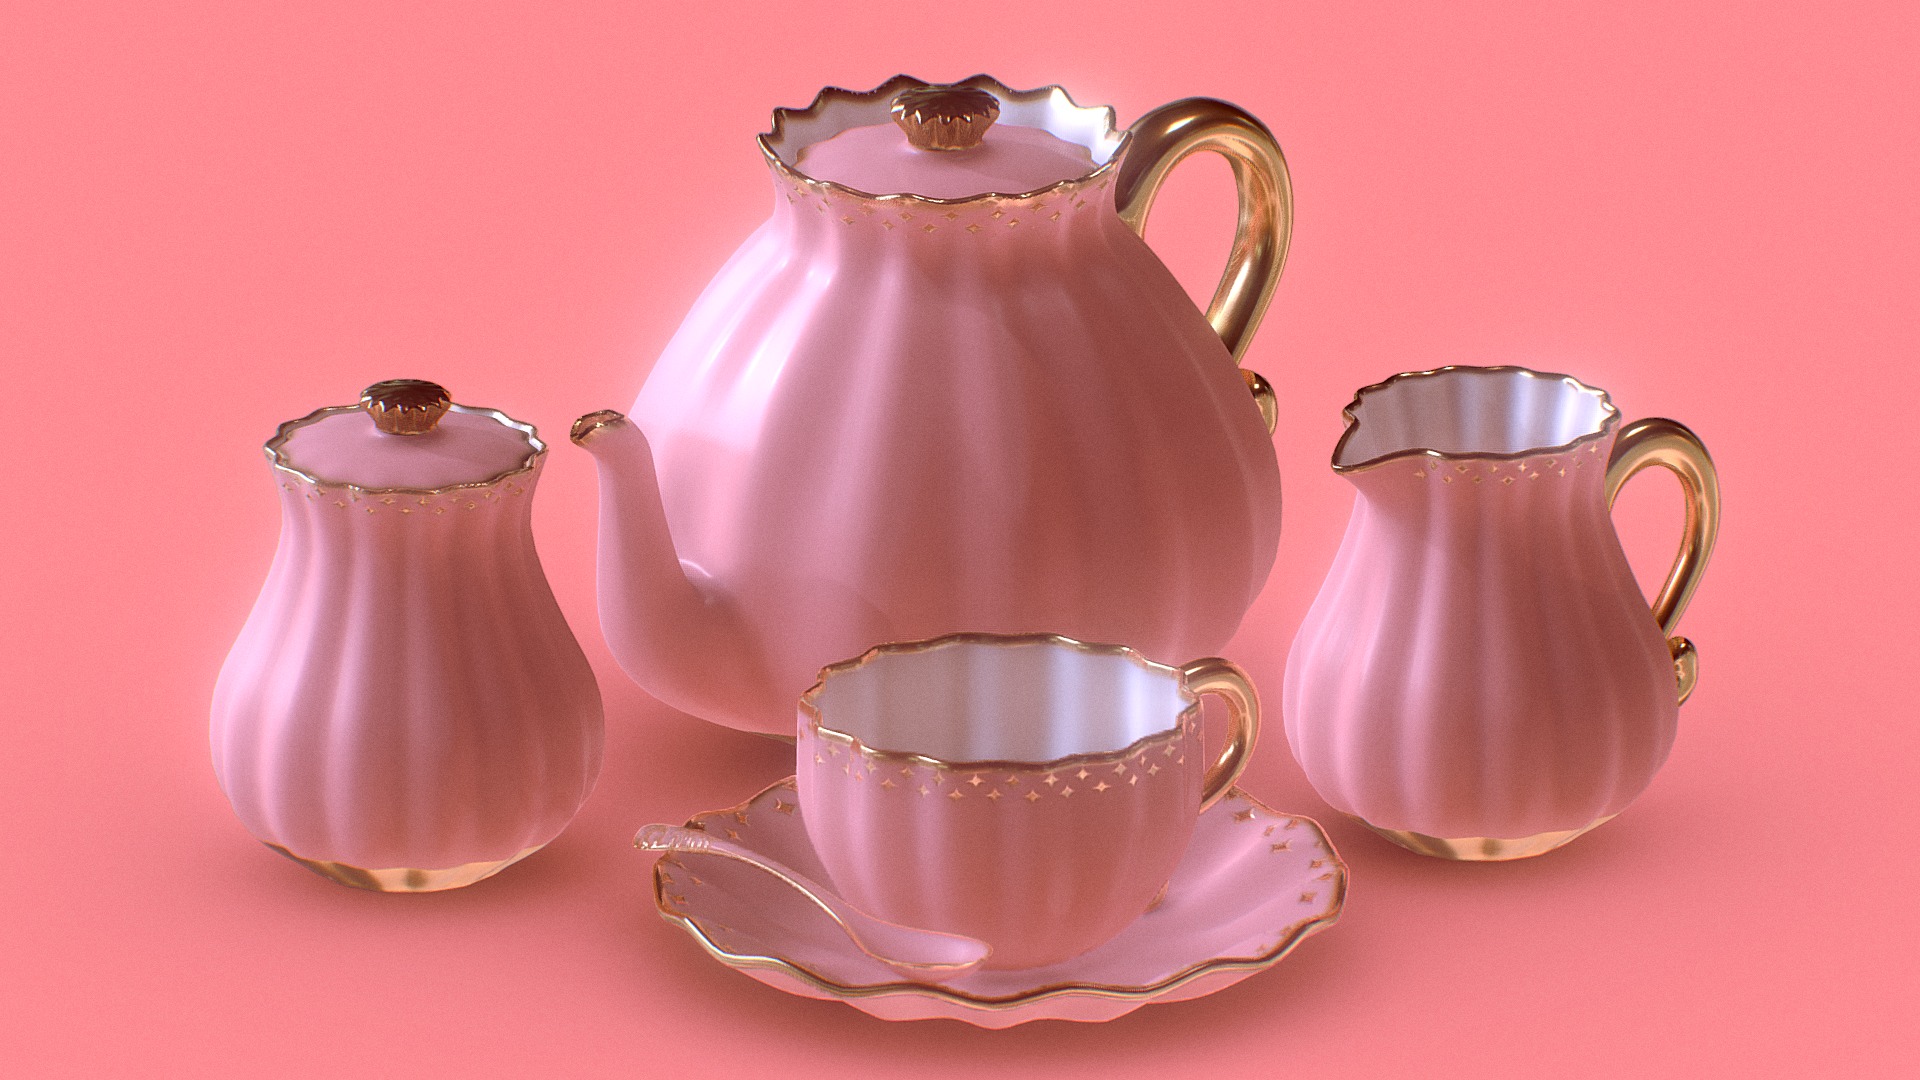 3D model TEA SET 1 - This is a 3D model of the TEA SET 1. The 3D model is about a teapot and a tea pot.